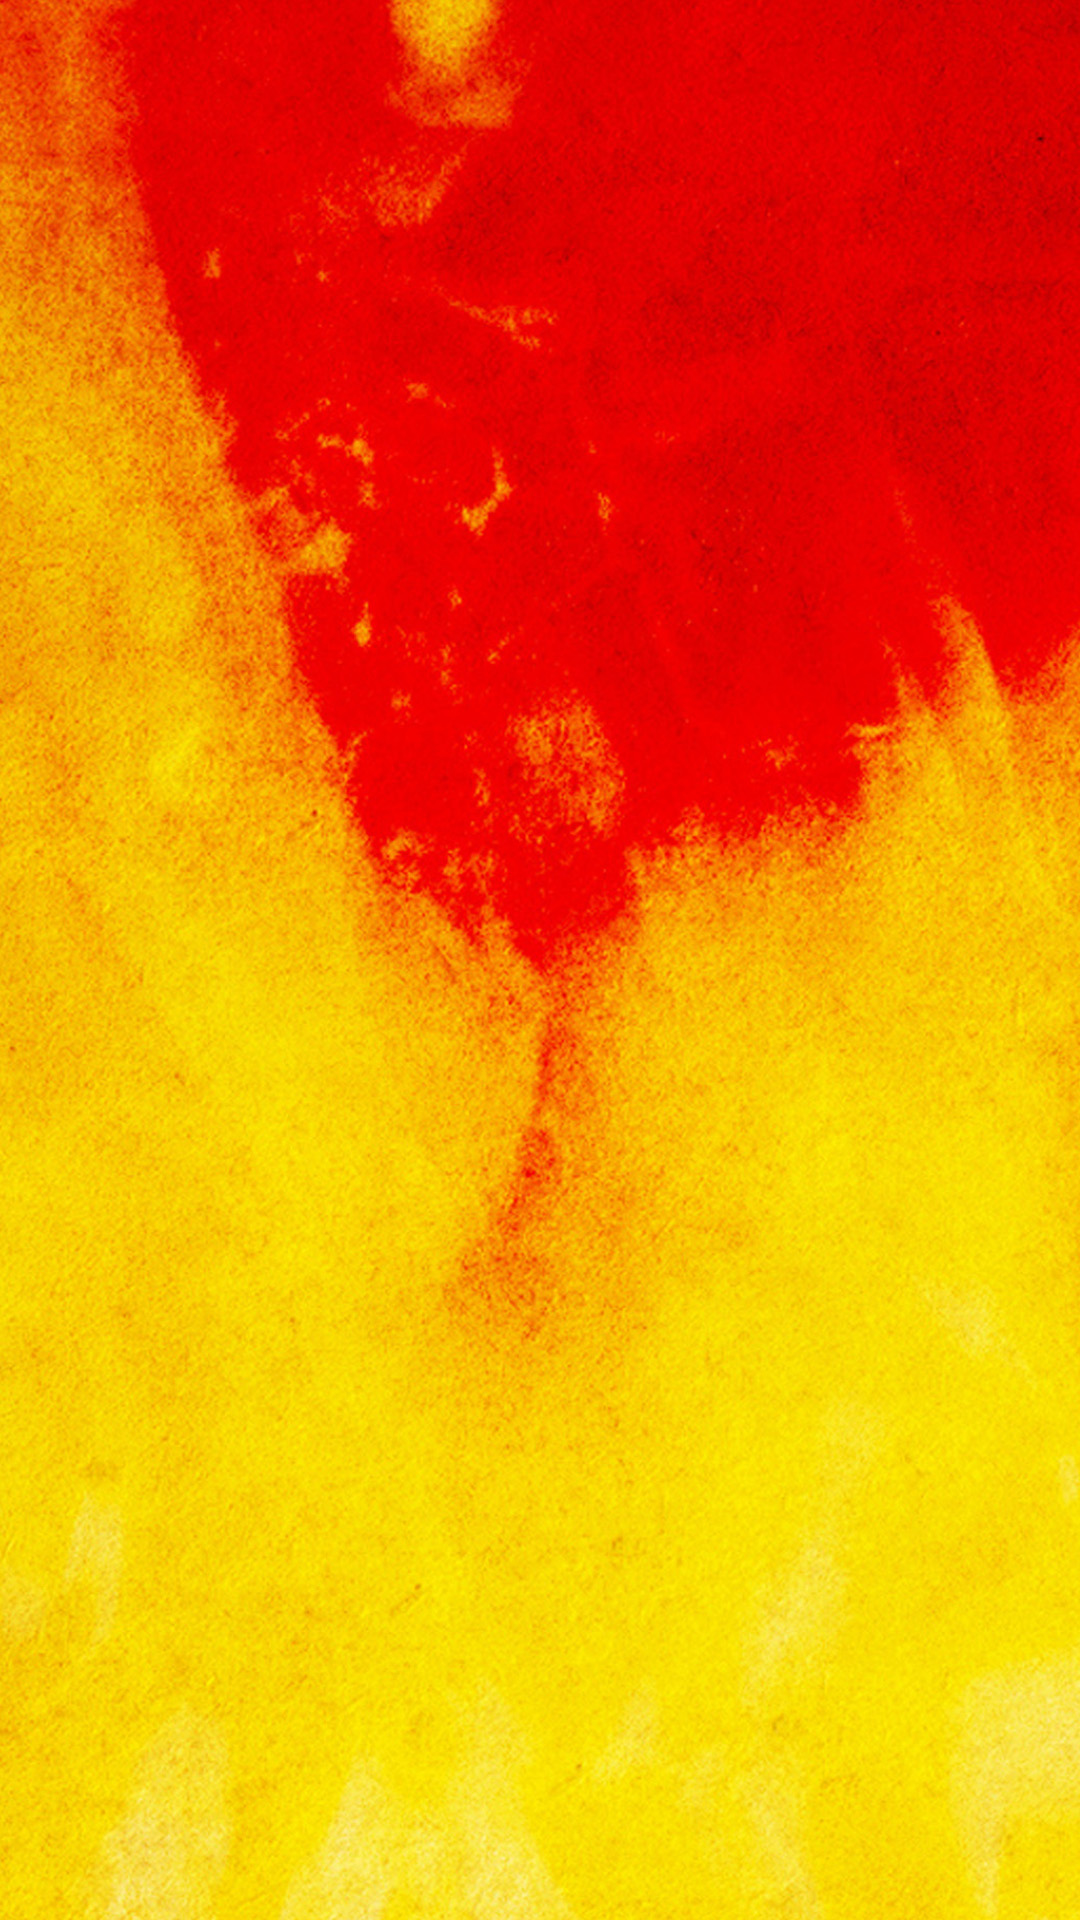 htc m8 wallpaper,rosso,arancia,giallo,pittura ad acquerello